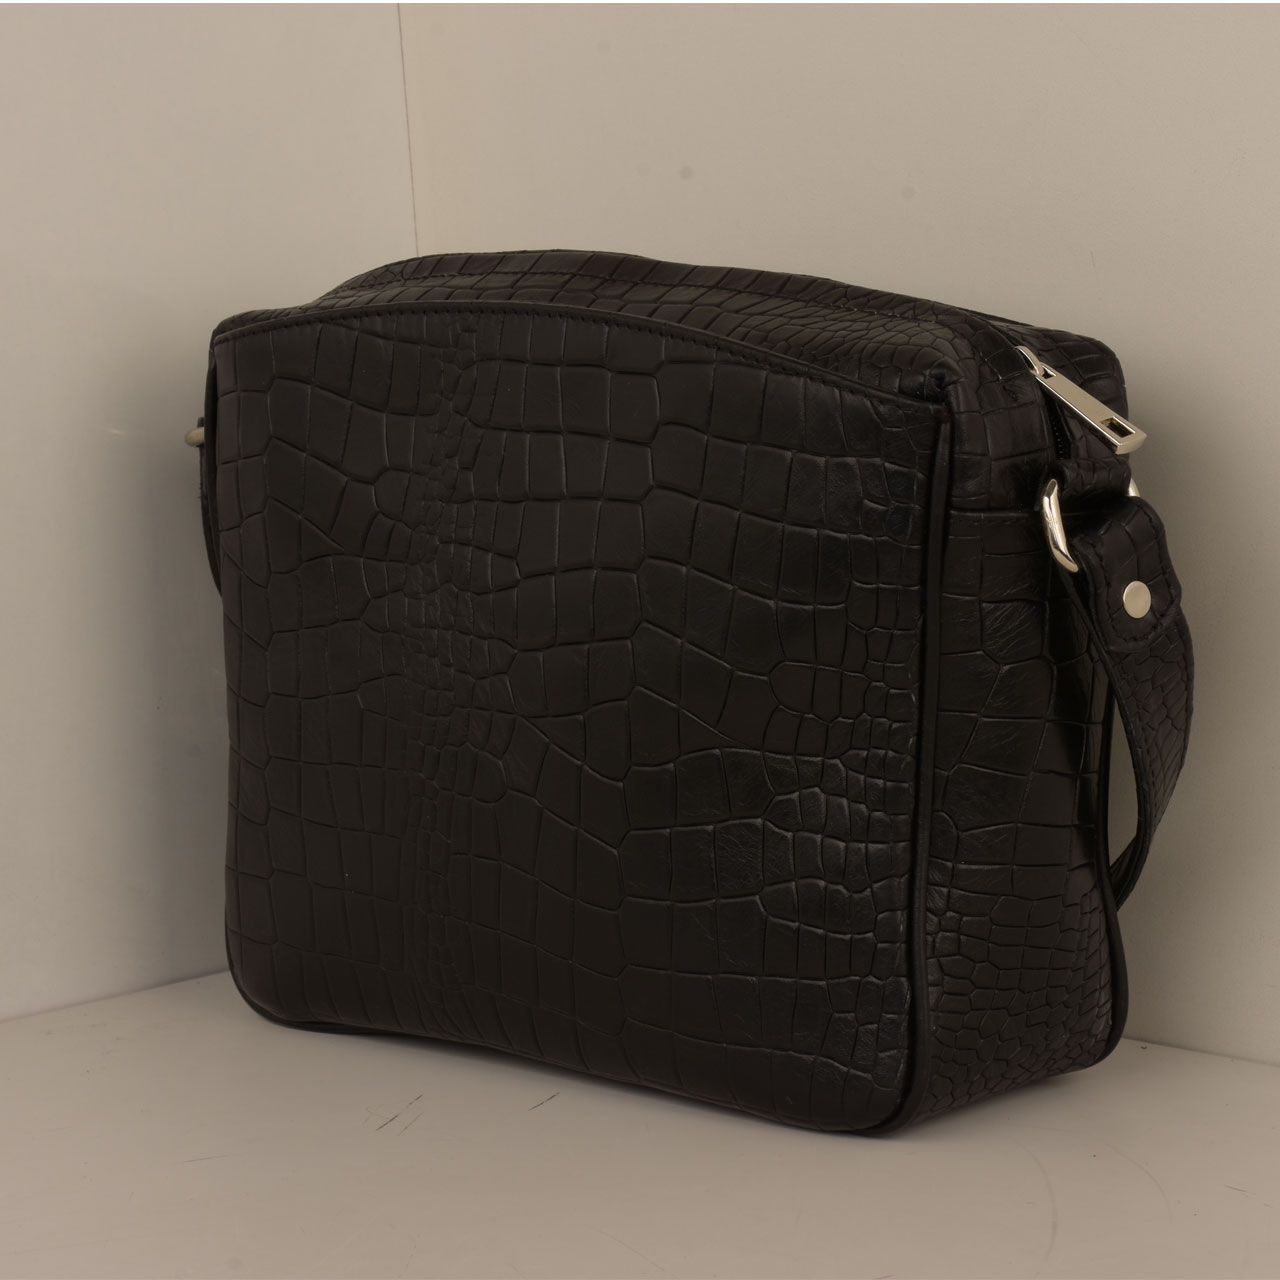  کیف دوشی زنانه پارینه چرم مدل V201-7 -  - 11